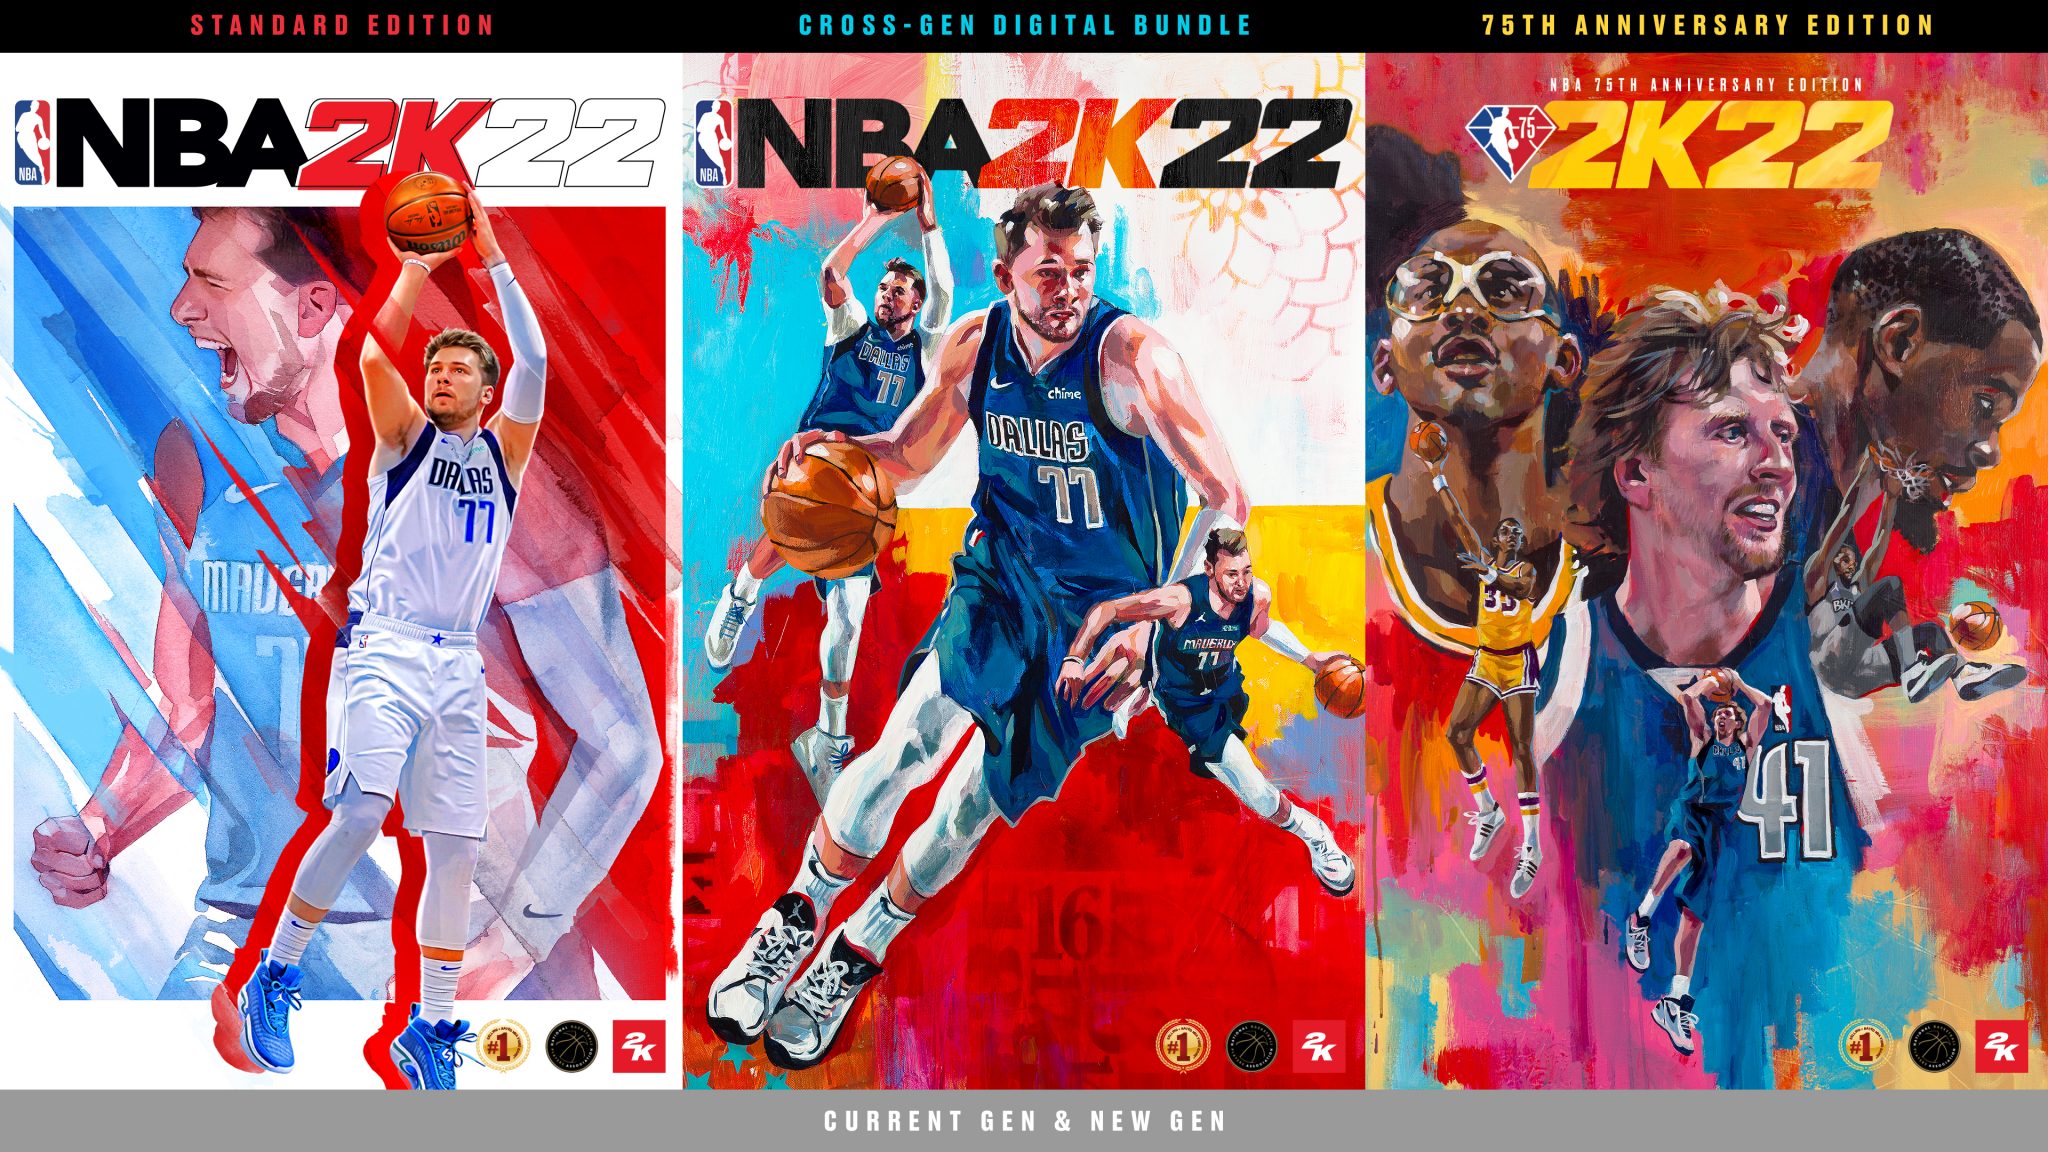 Ya a la venta el nuevo NBA 2K22. Aquí te contamos algunas de las novedades